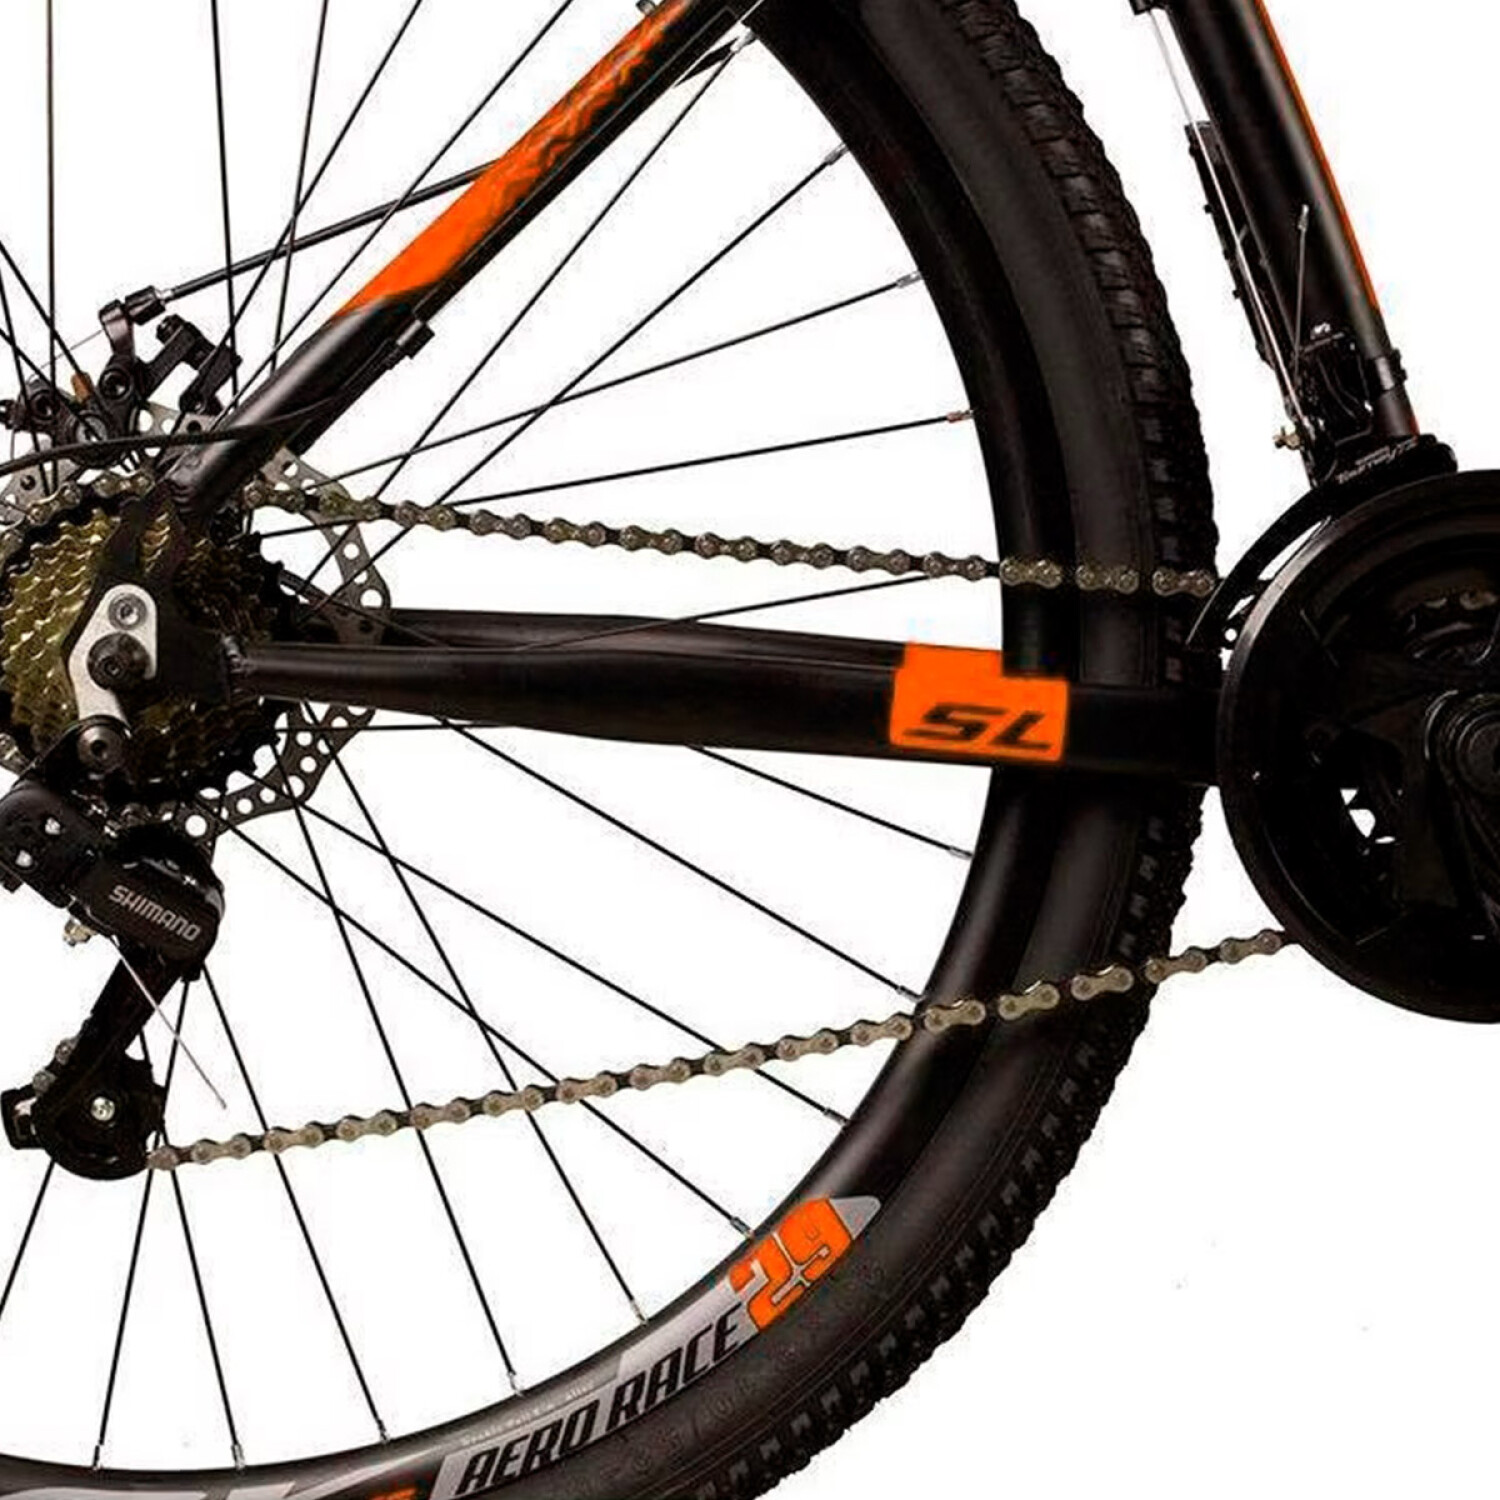 Bicicleta Montaña Dropp Rodado 29 Aluminio Cambios Shimano - Negro-Naranja  — El Rey del entretenimiento